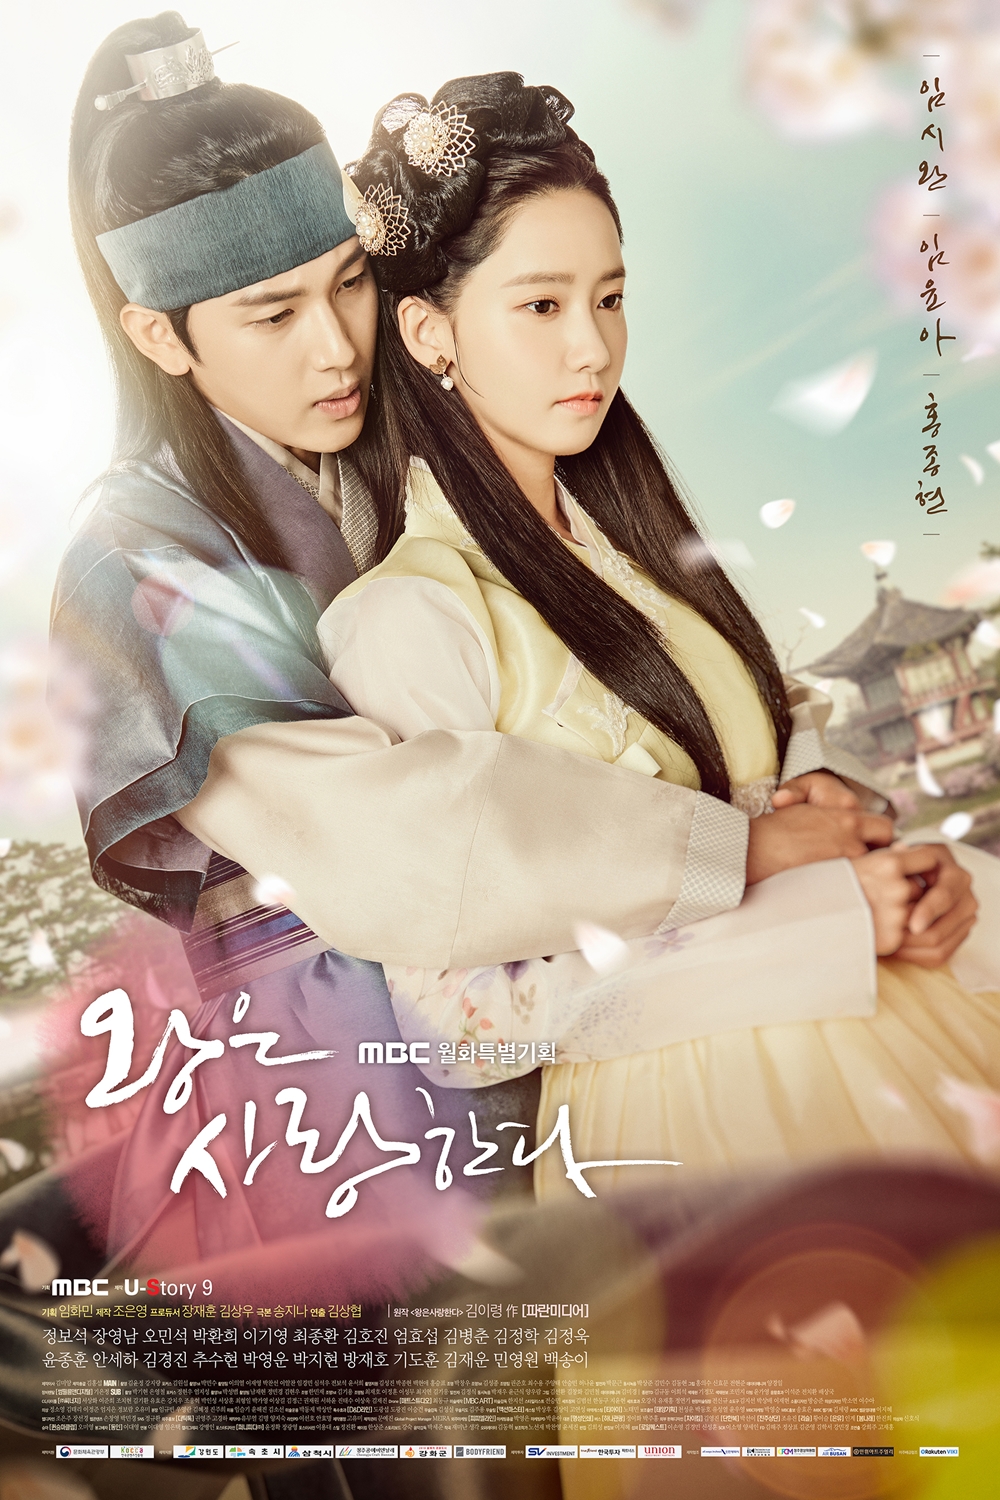 8 Drama Korea romantis dengan ending sedih, berakhir putus